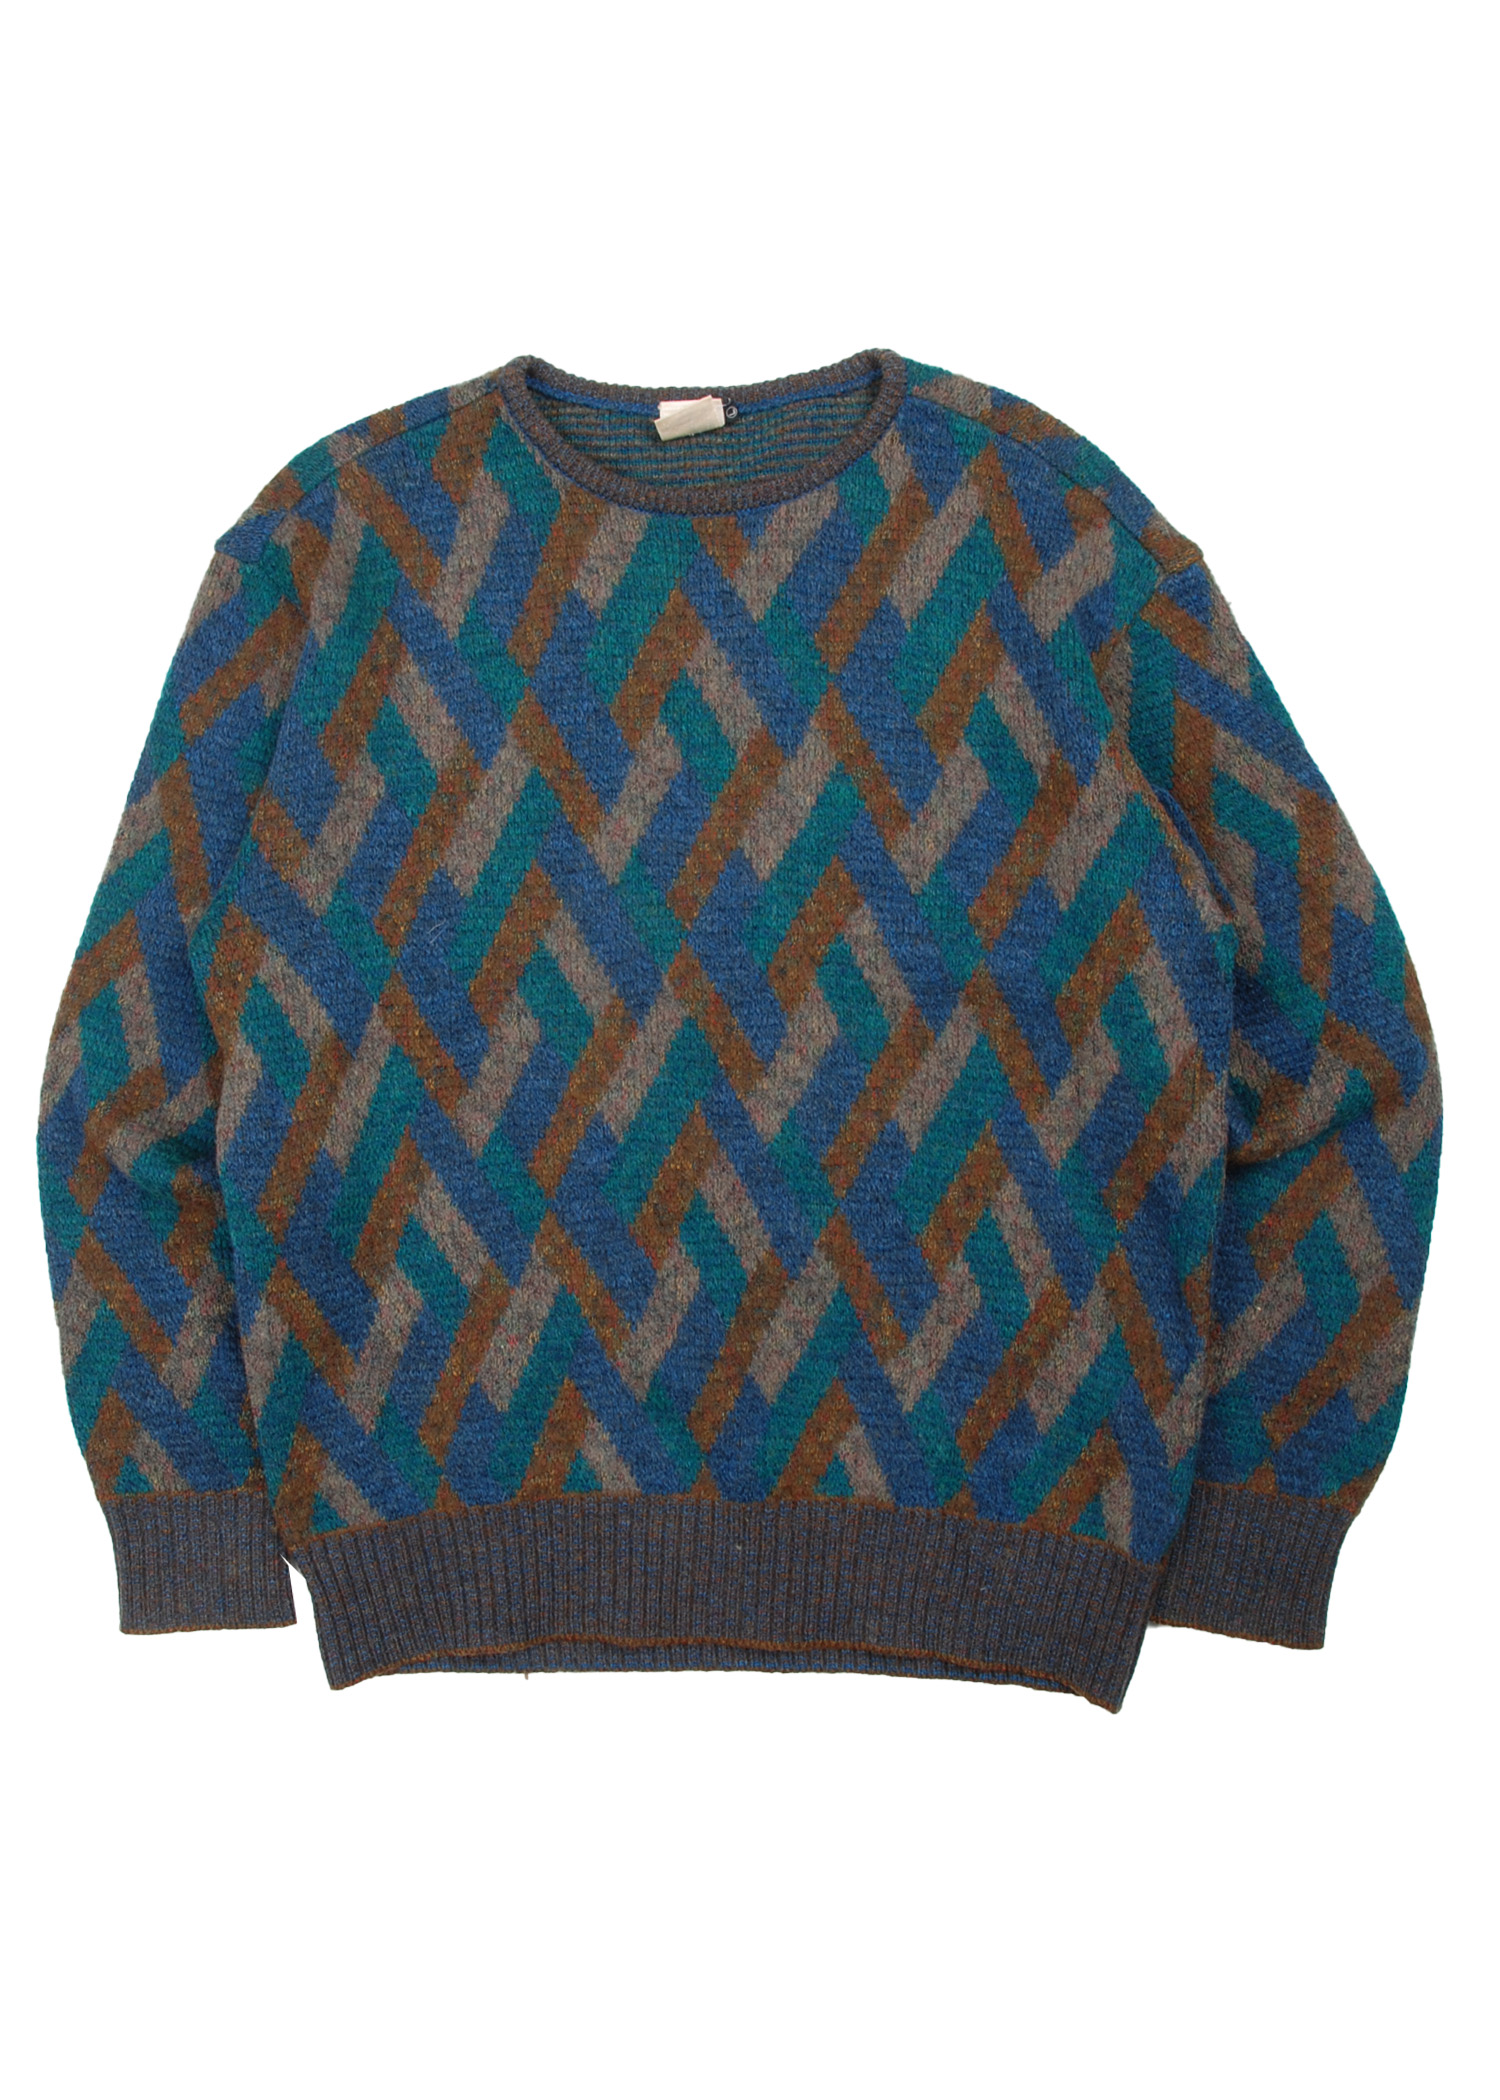 Modigliani pattern knit